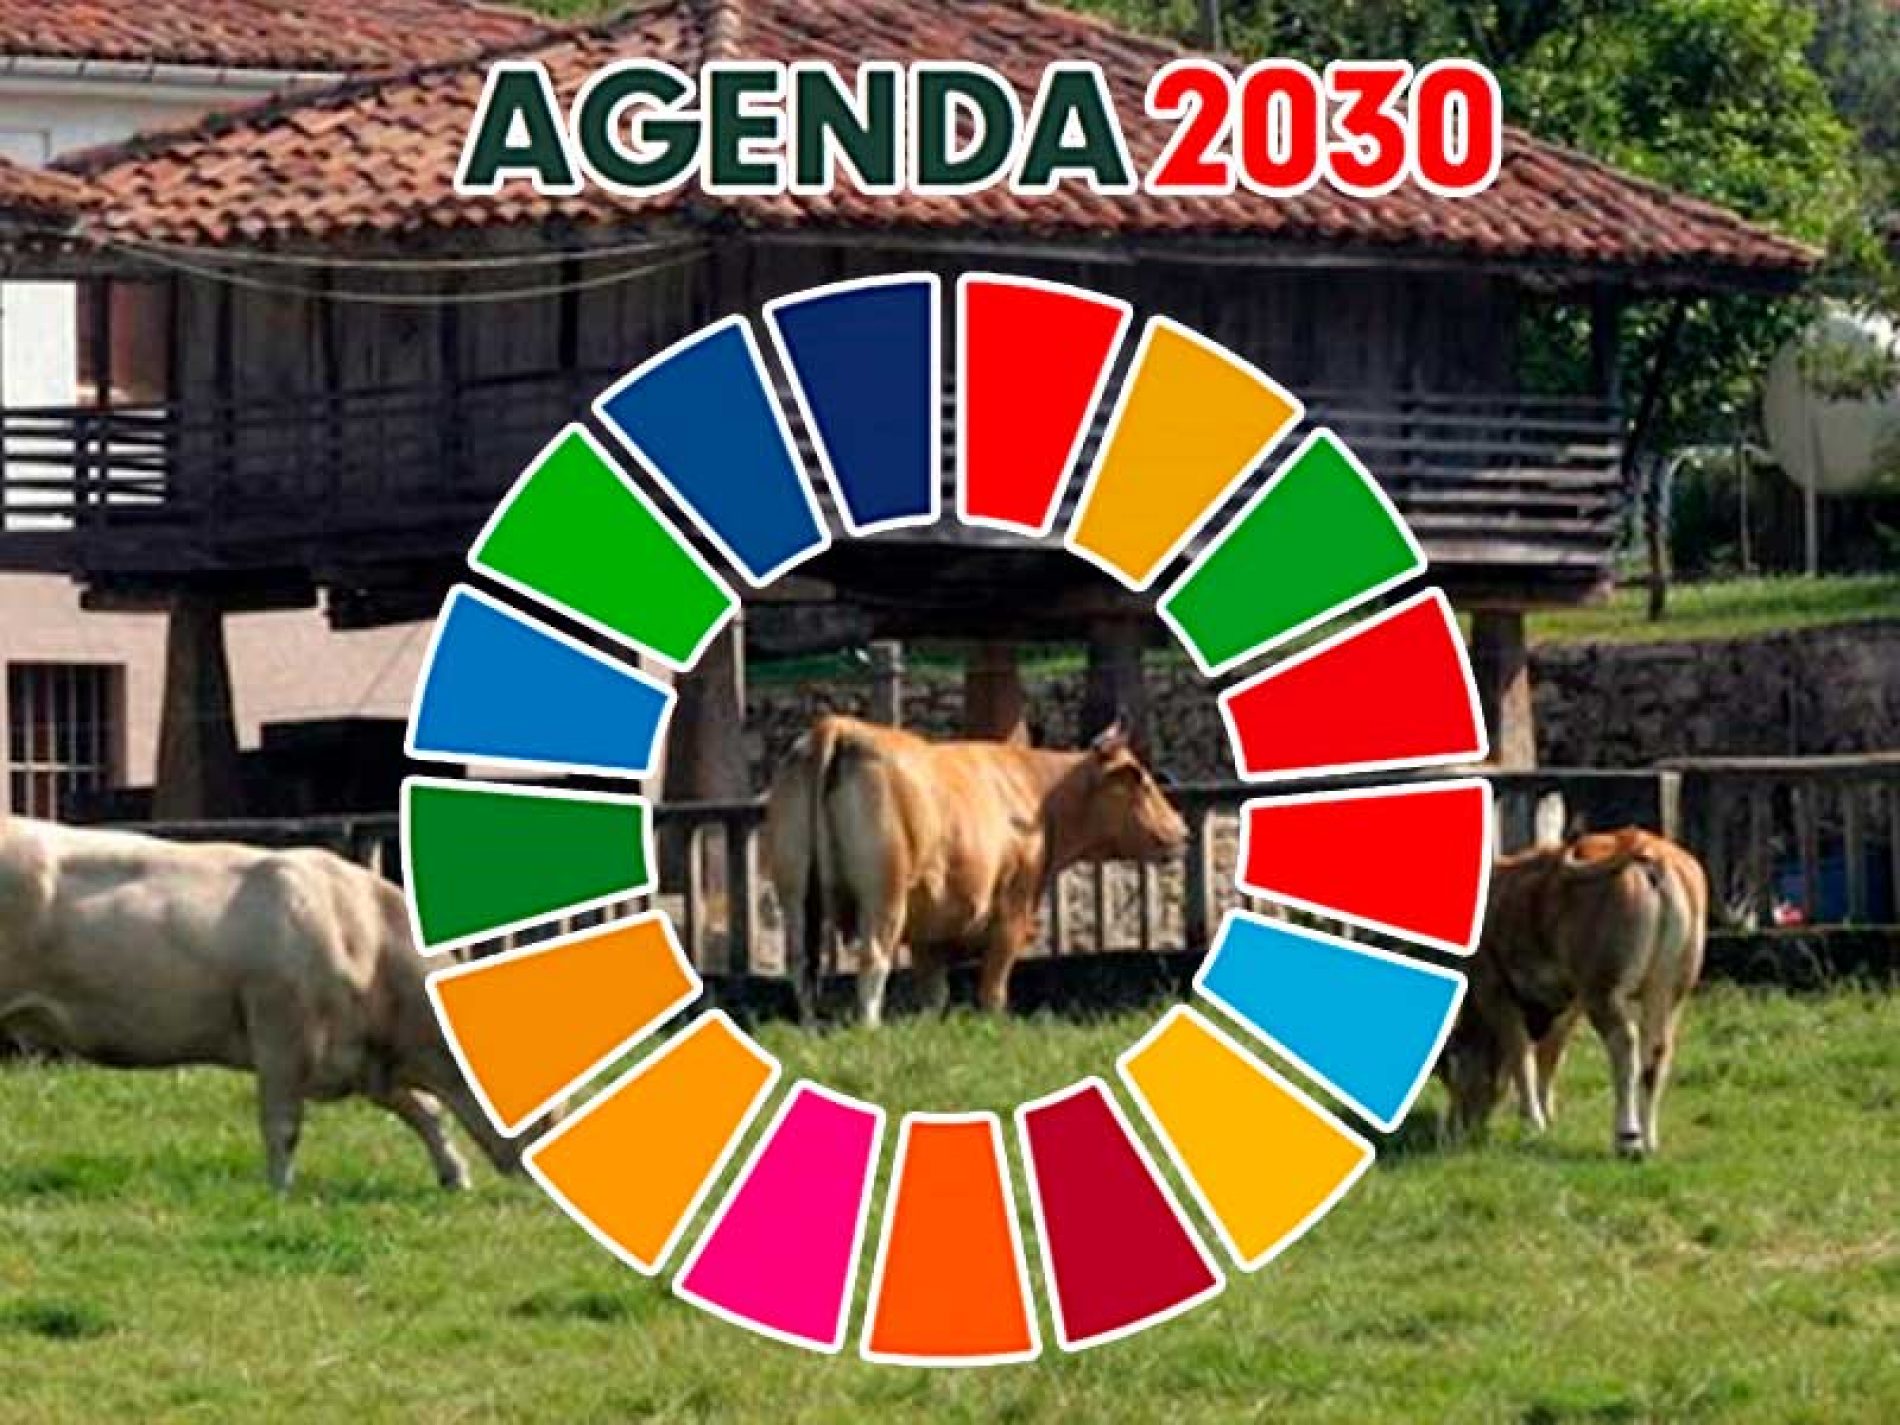 La Agenda 2030 es rural y miente el que diga lo contrario